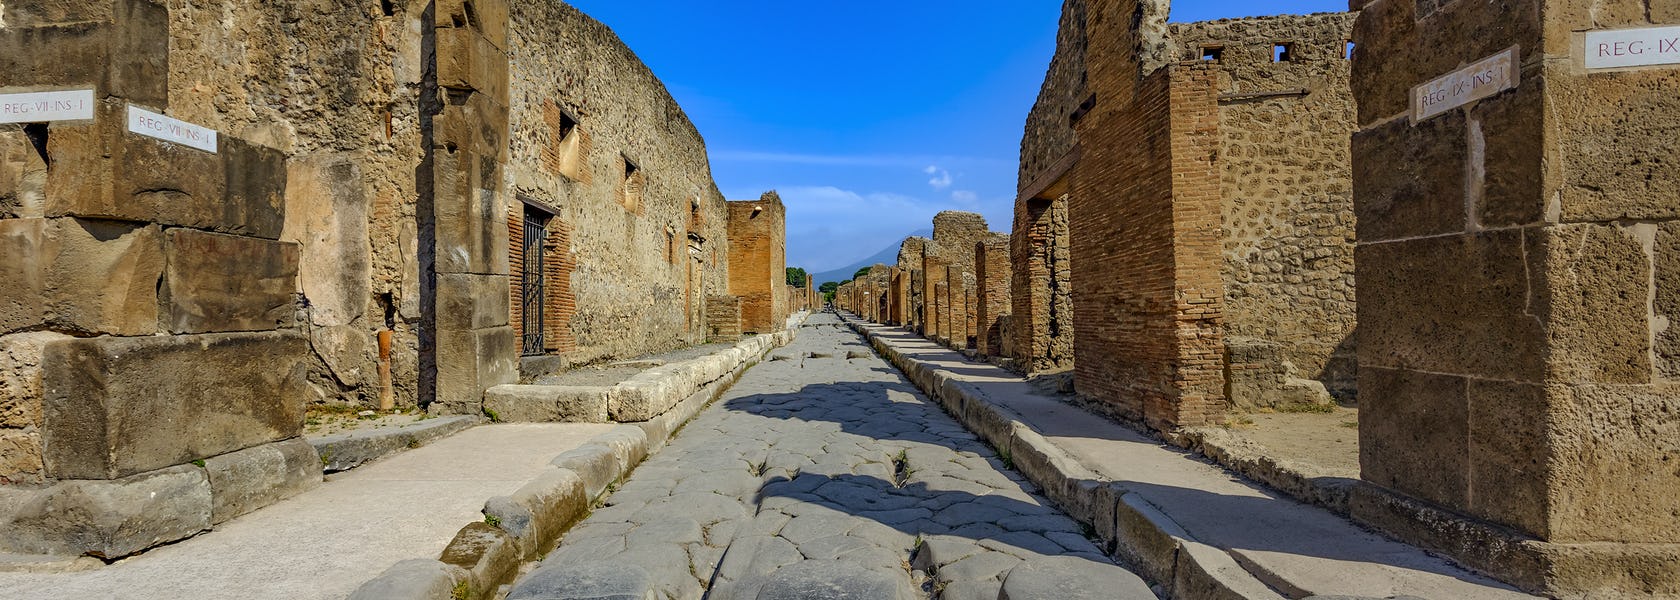 Entradas a las excavaciones de Pompeya Musement